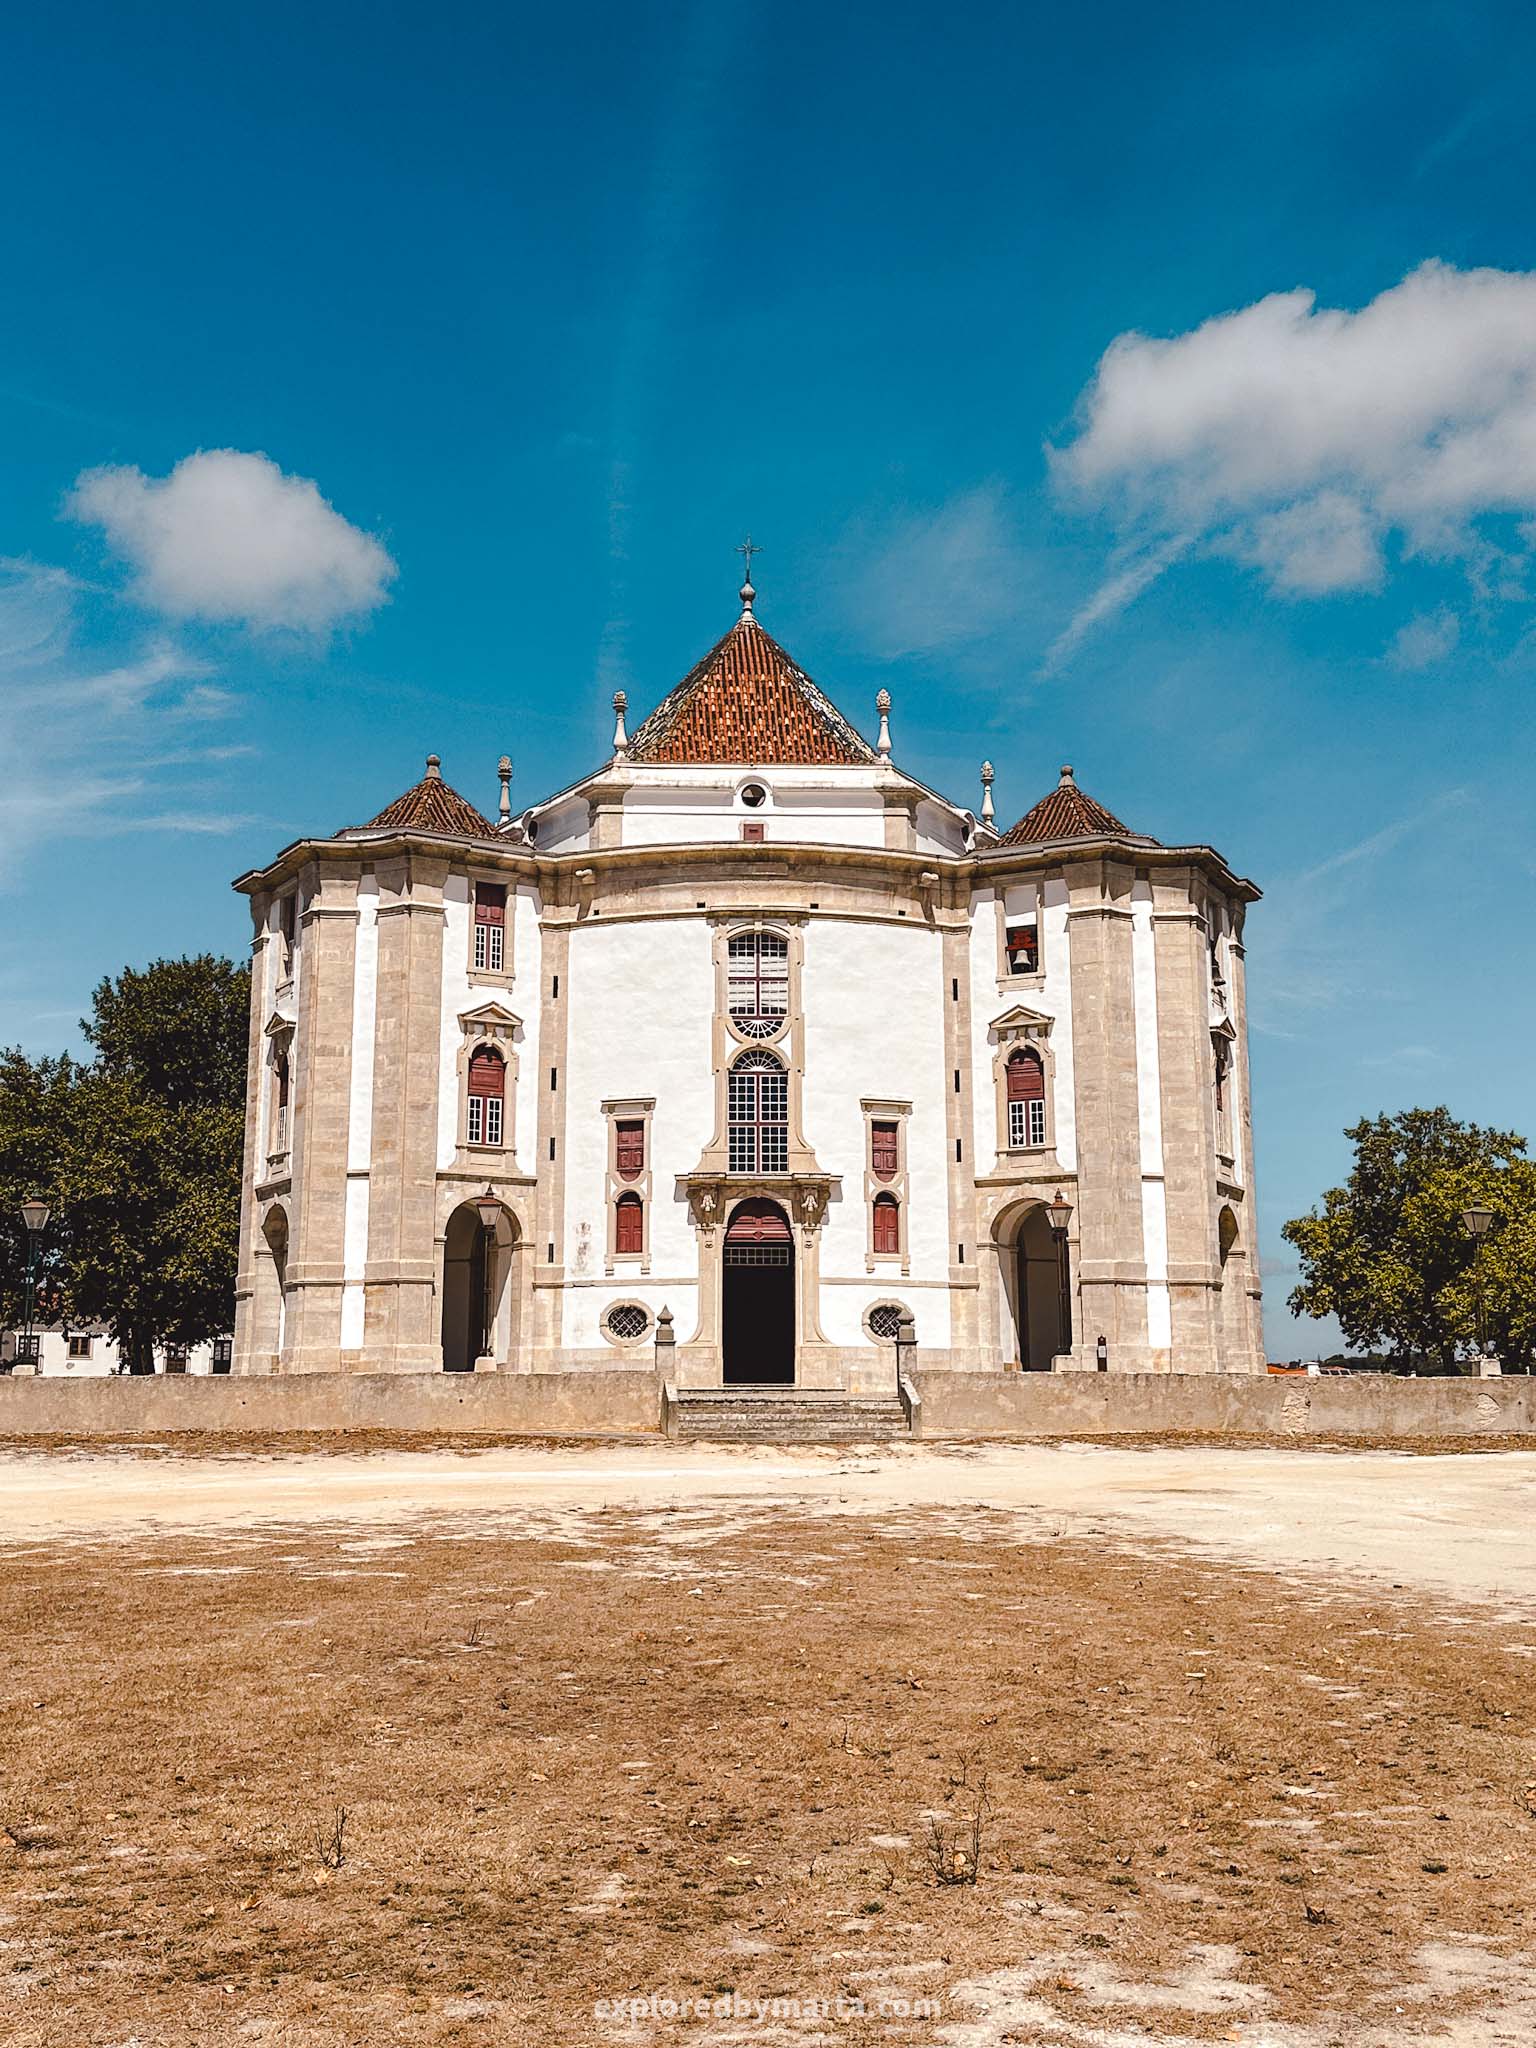 Óbidos, Portugal things to do-Santuário do Senhor da Pedra